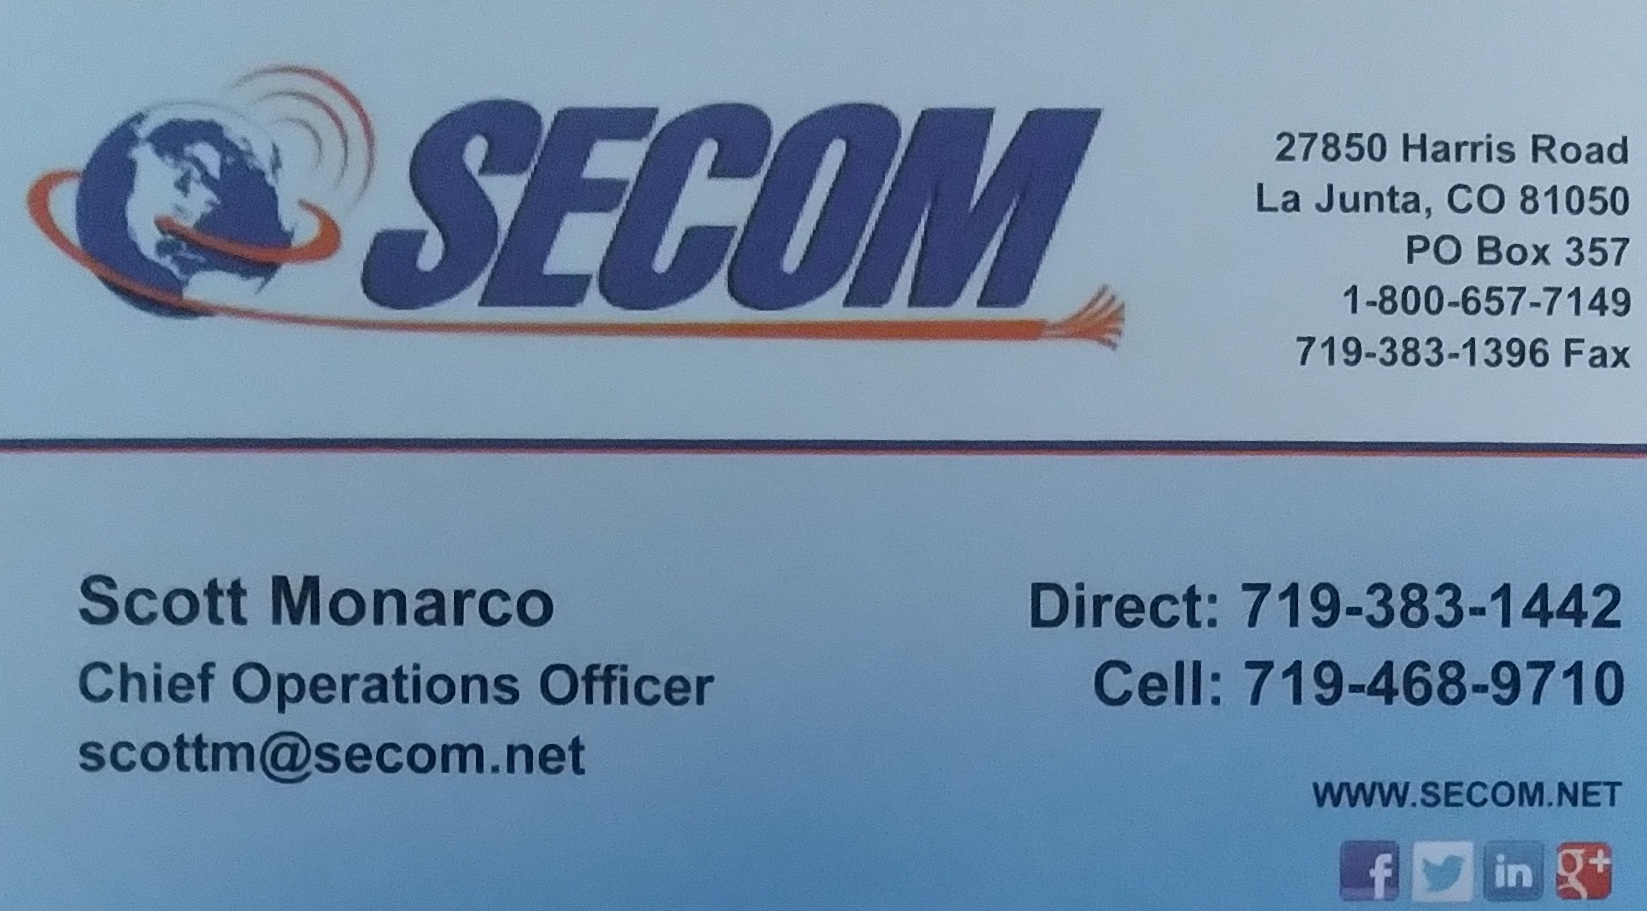 SECOM Business Card